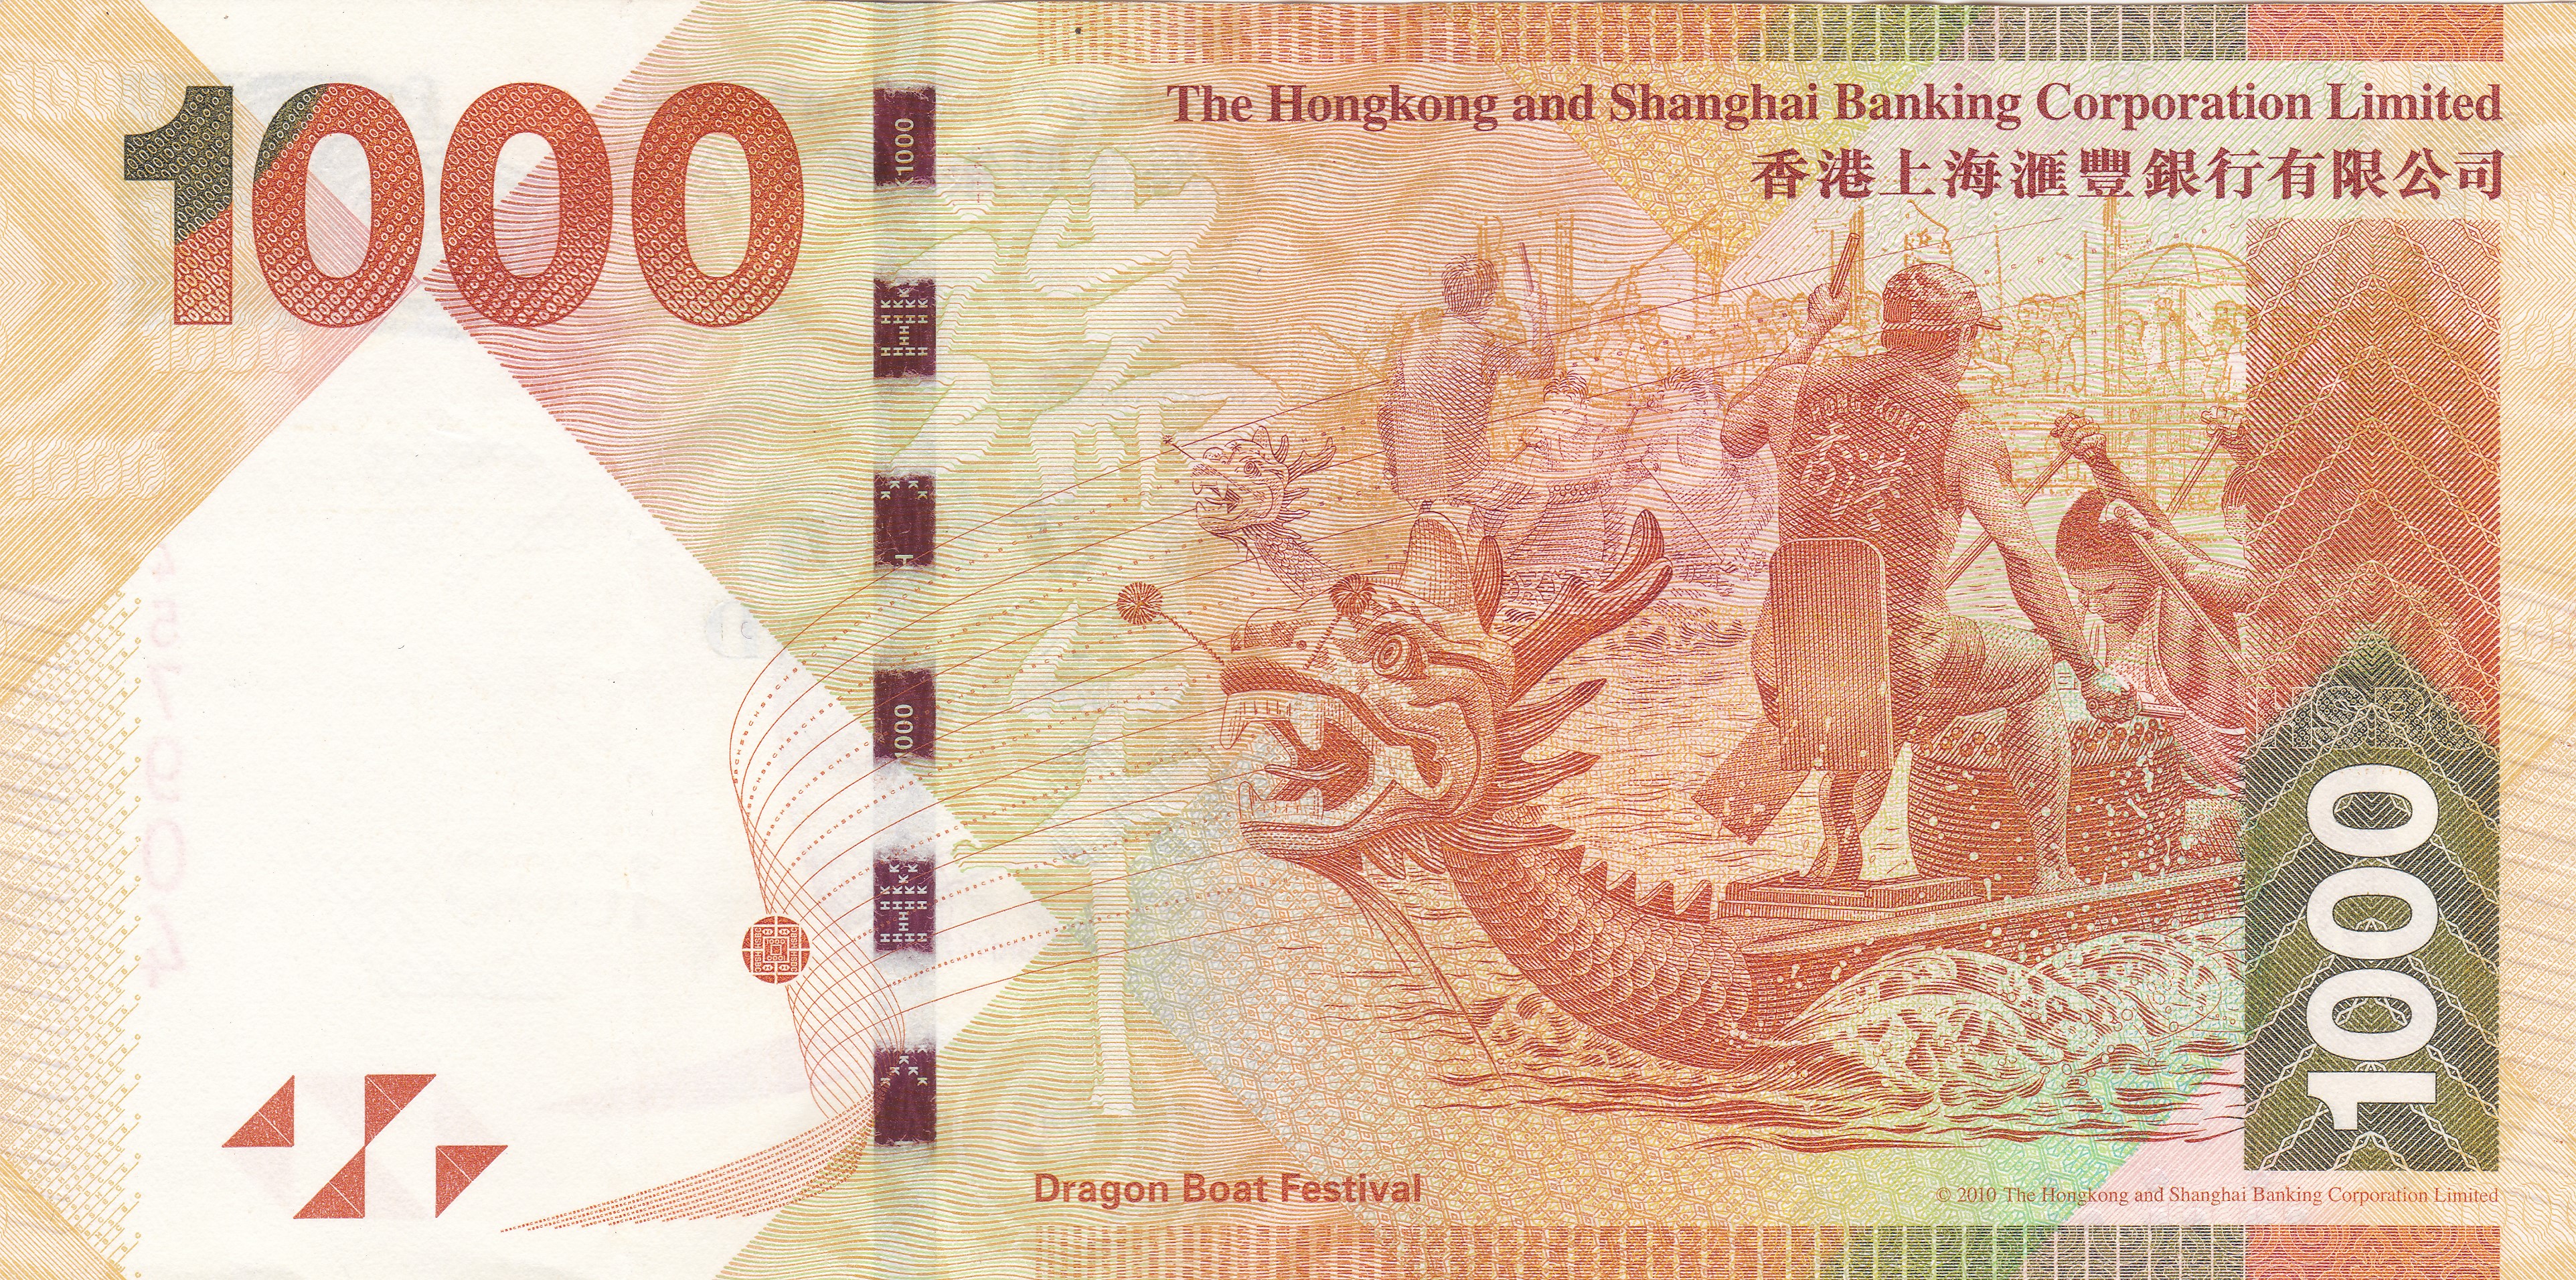 以节日为主题汇丰银行发行的中国特色的港币你见过吗